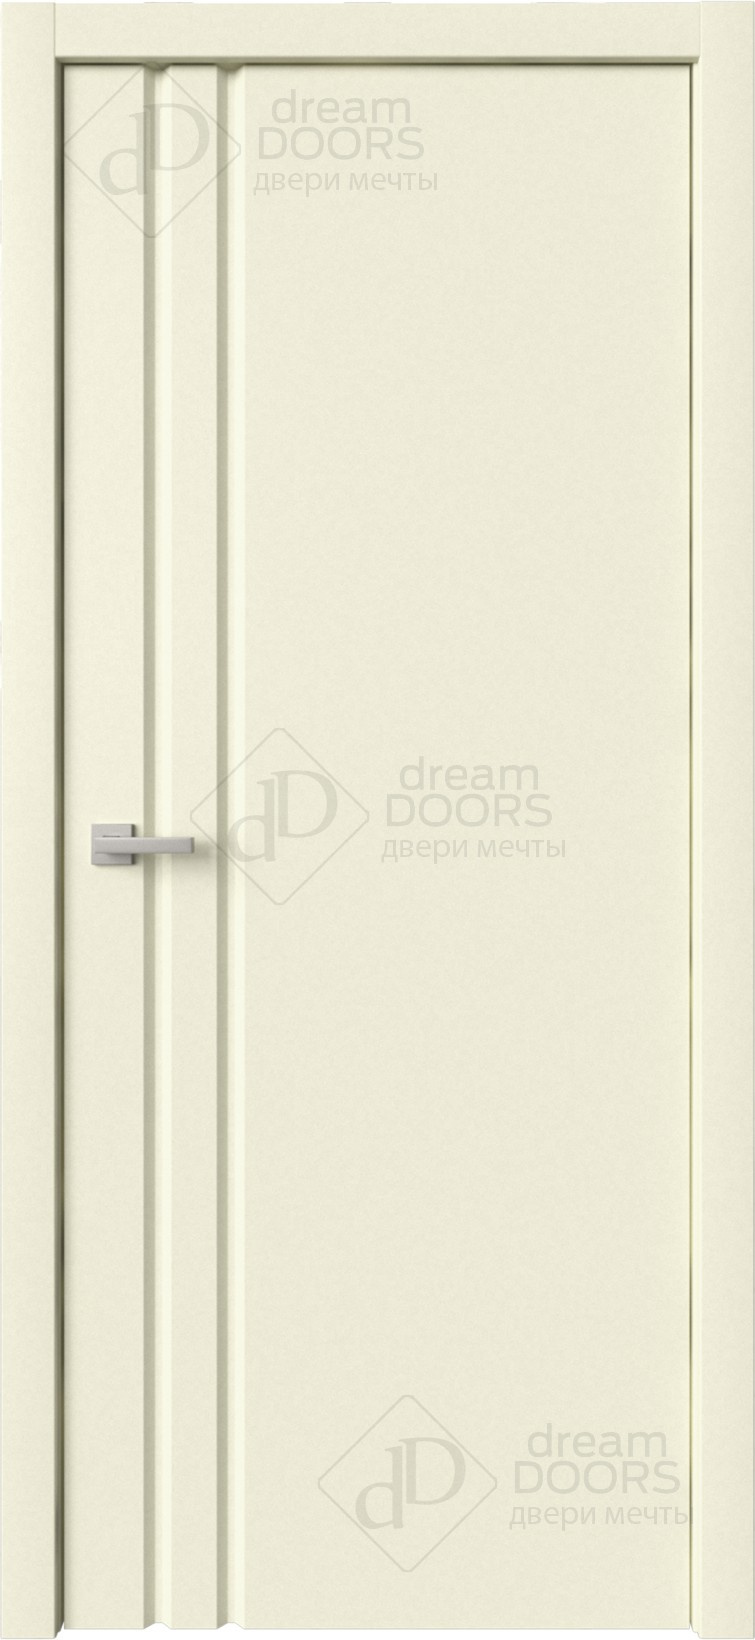 Dream Doors Межкомнатная дверь Стиль 1 узкое ПГ, арт. 6269 - фото №4